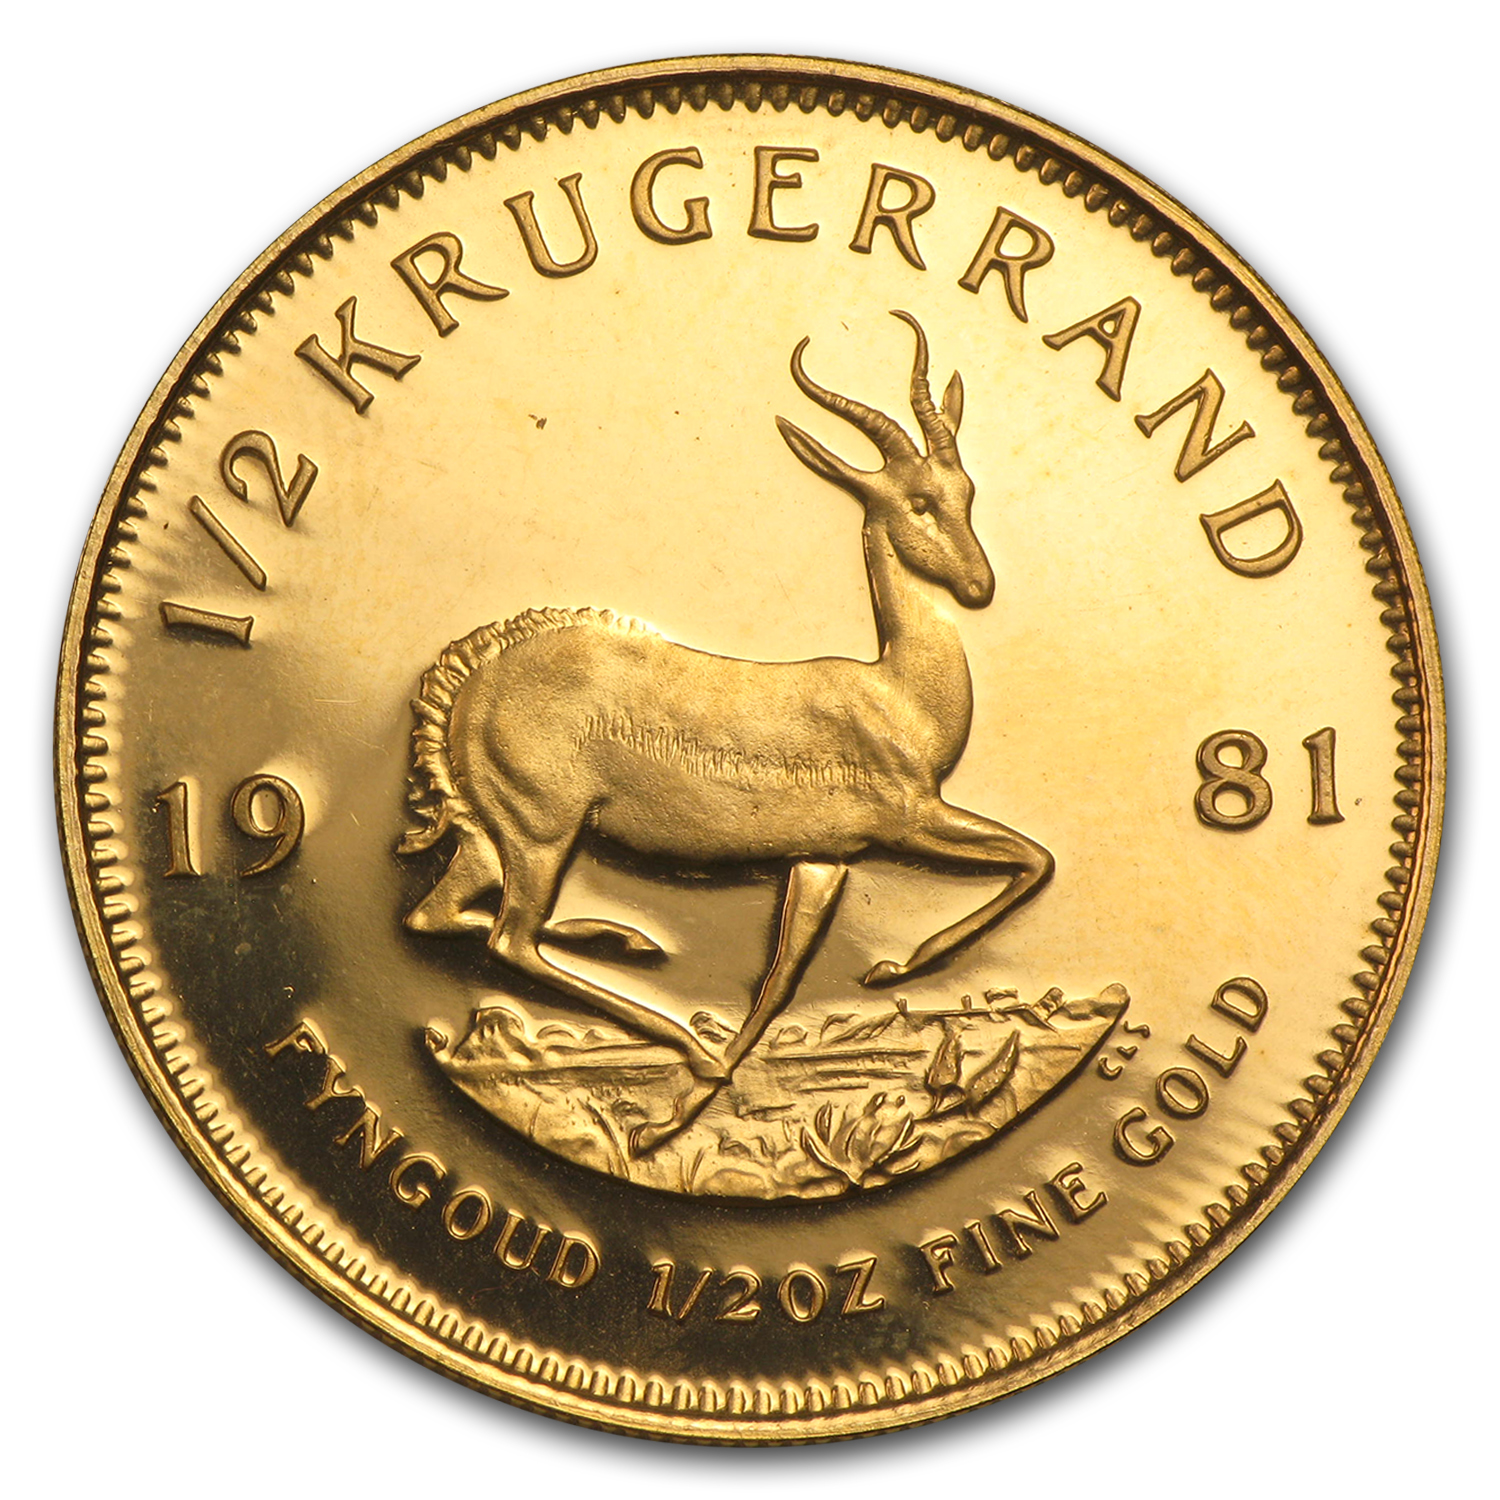 Buy 1981 South Africa 1/2 oz Gold Krugerrand